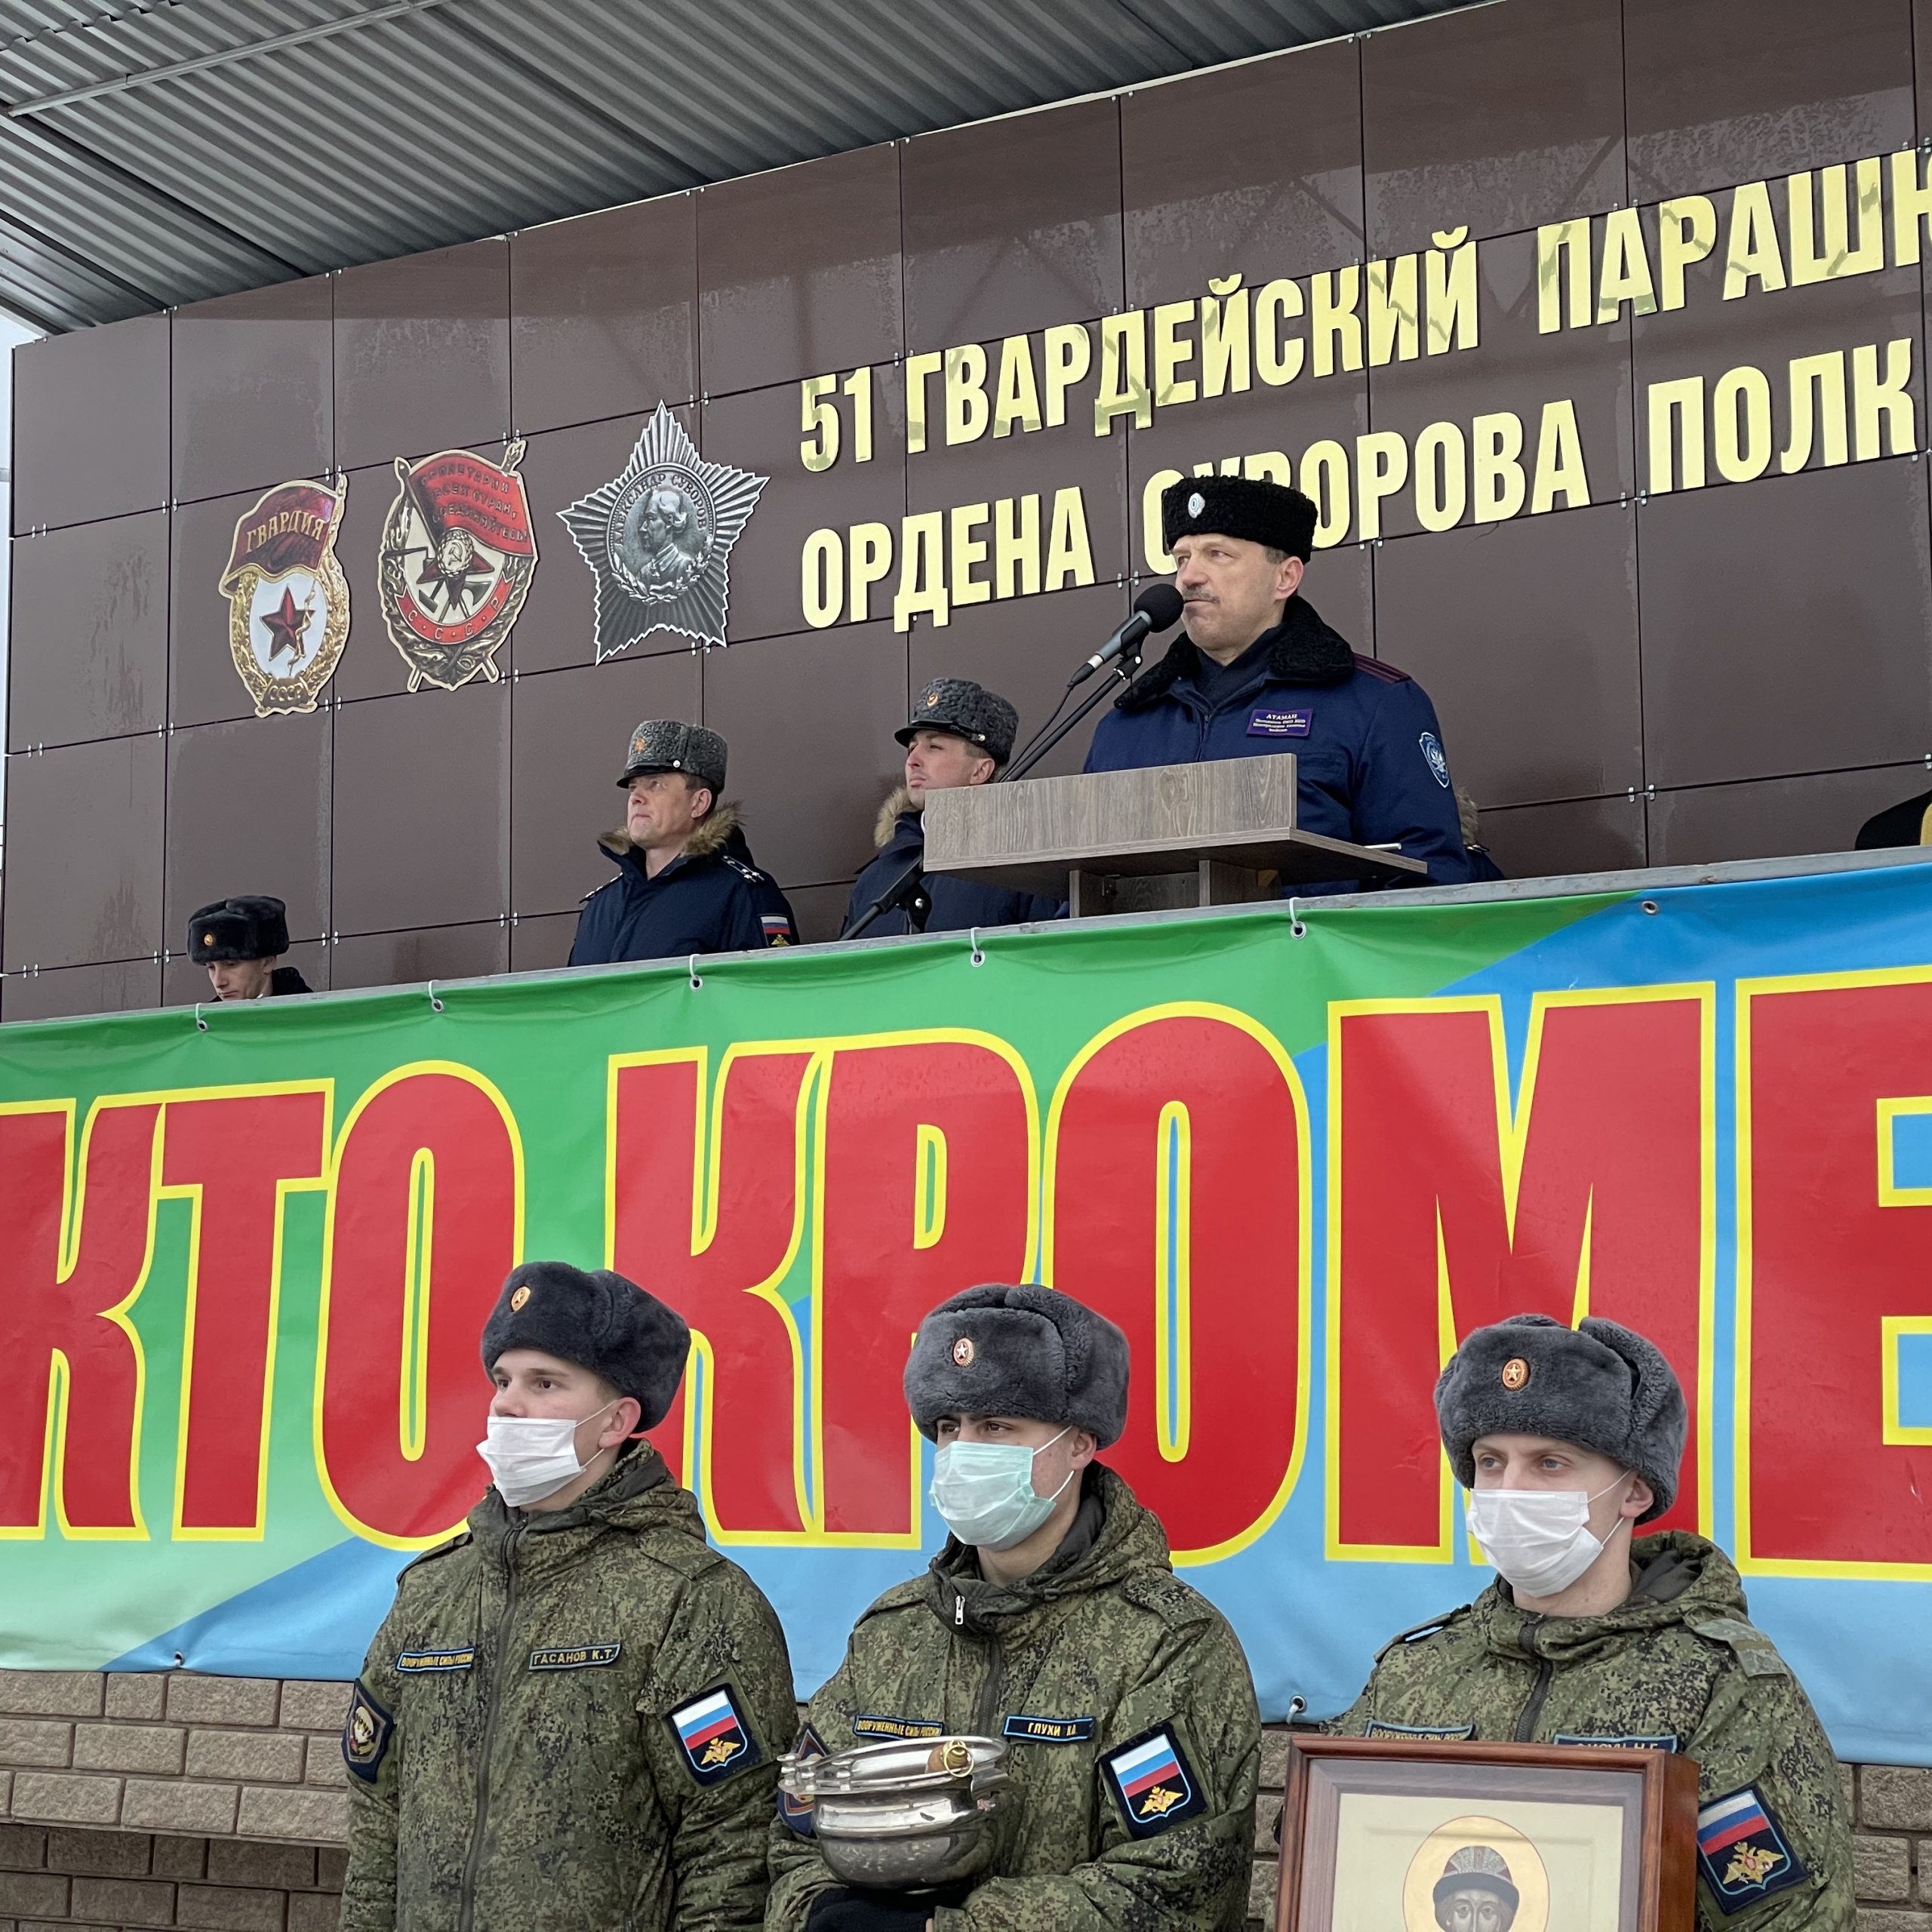 Атаман Западного окружного казачьего общества поздравил новобранцев 51-ого ПДП ВДВ.